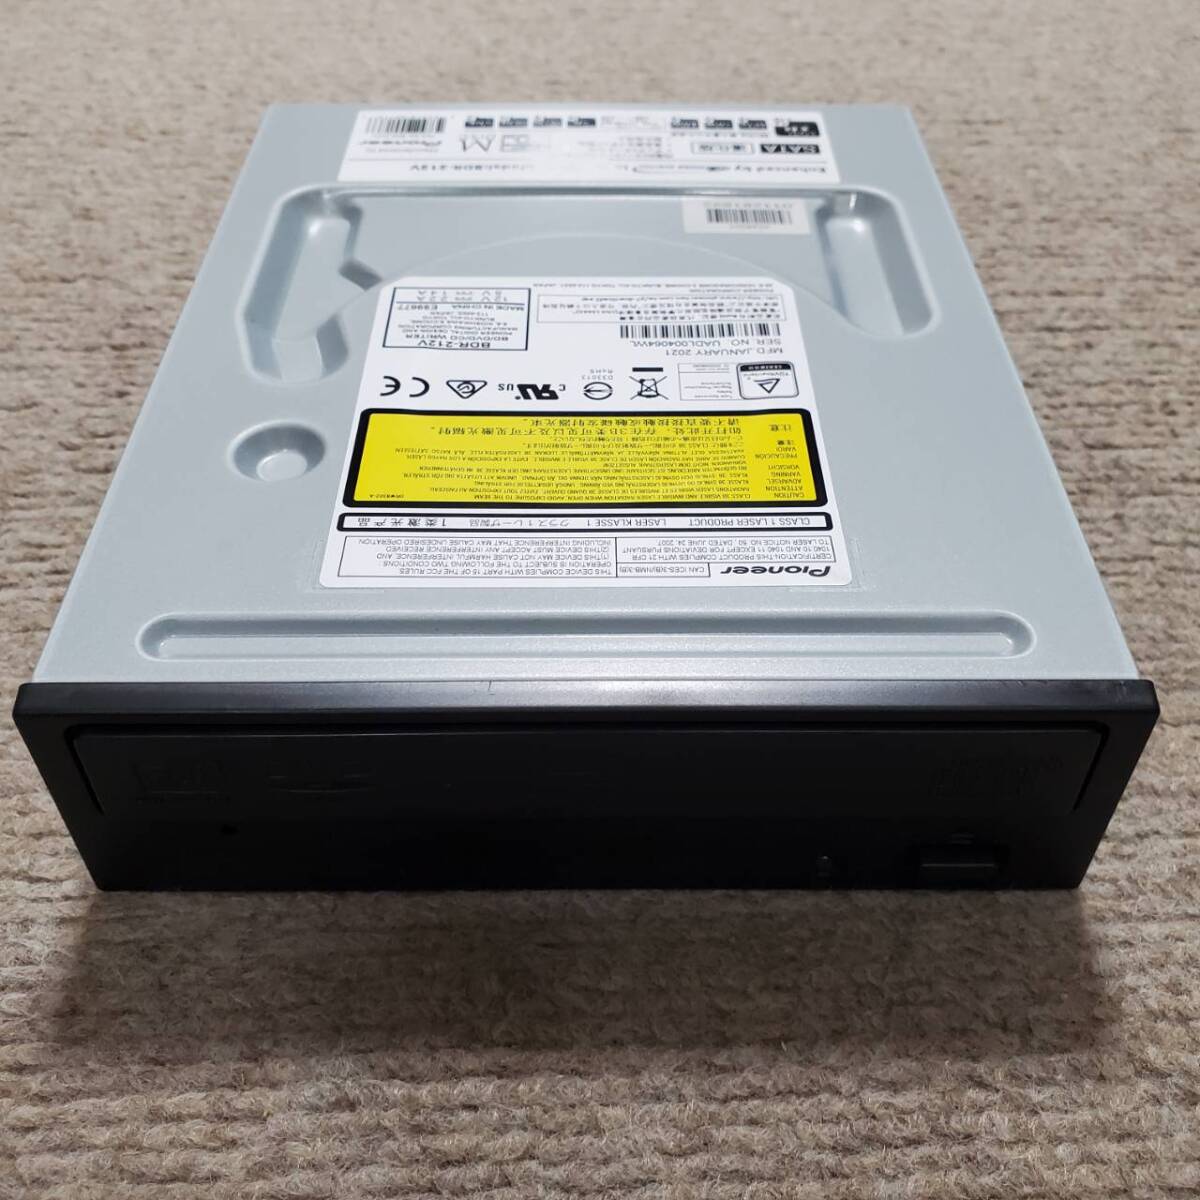 パイオニア ブルーレイドライブ 2021年1月製造 BDR-212 SATA デスクトップ 5インチ Pioneer Blu-ray DVD 書込みテストOK の画像1